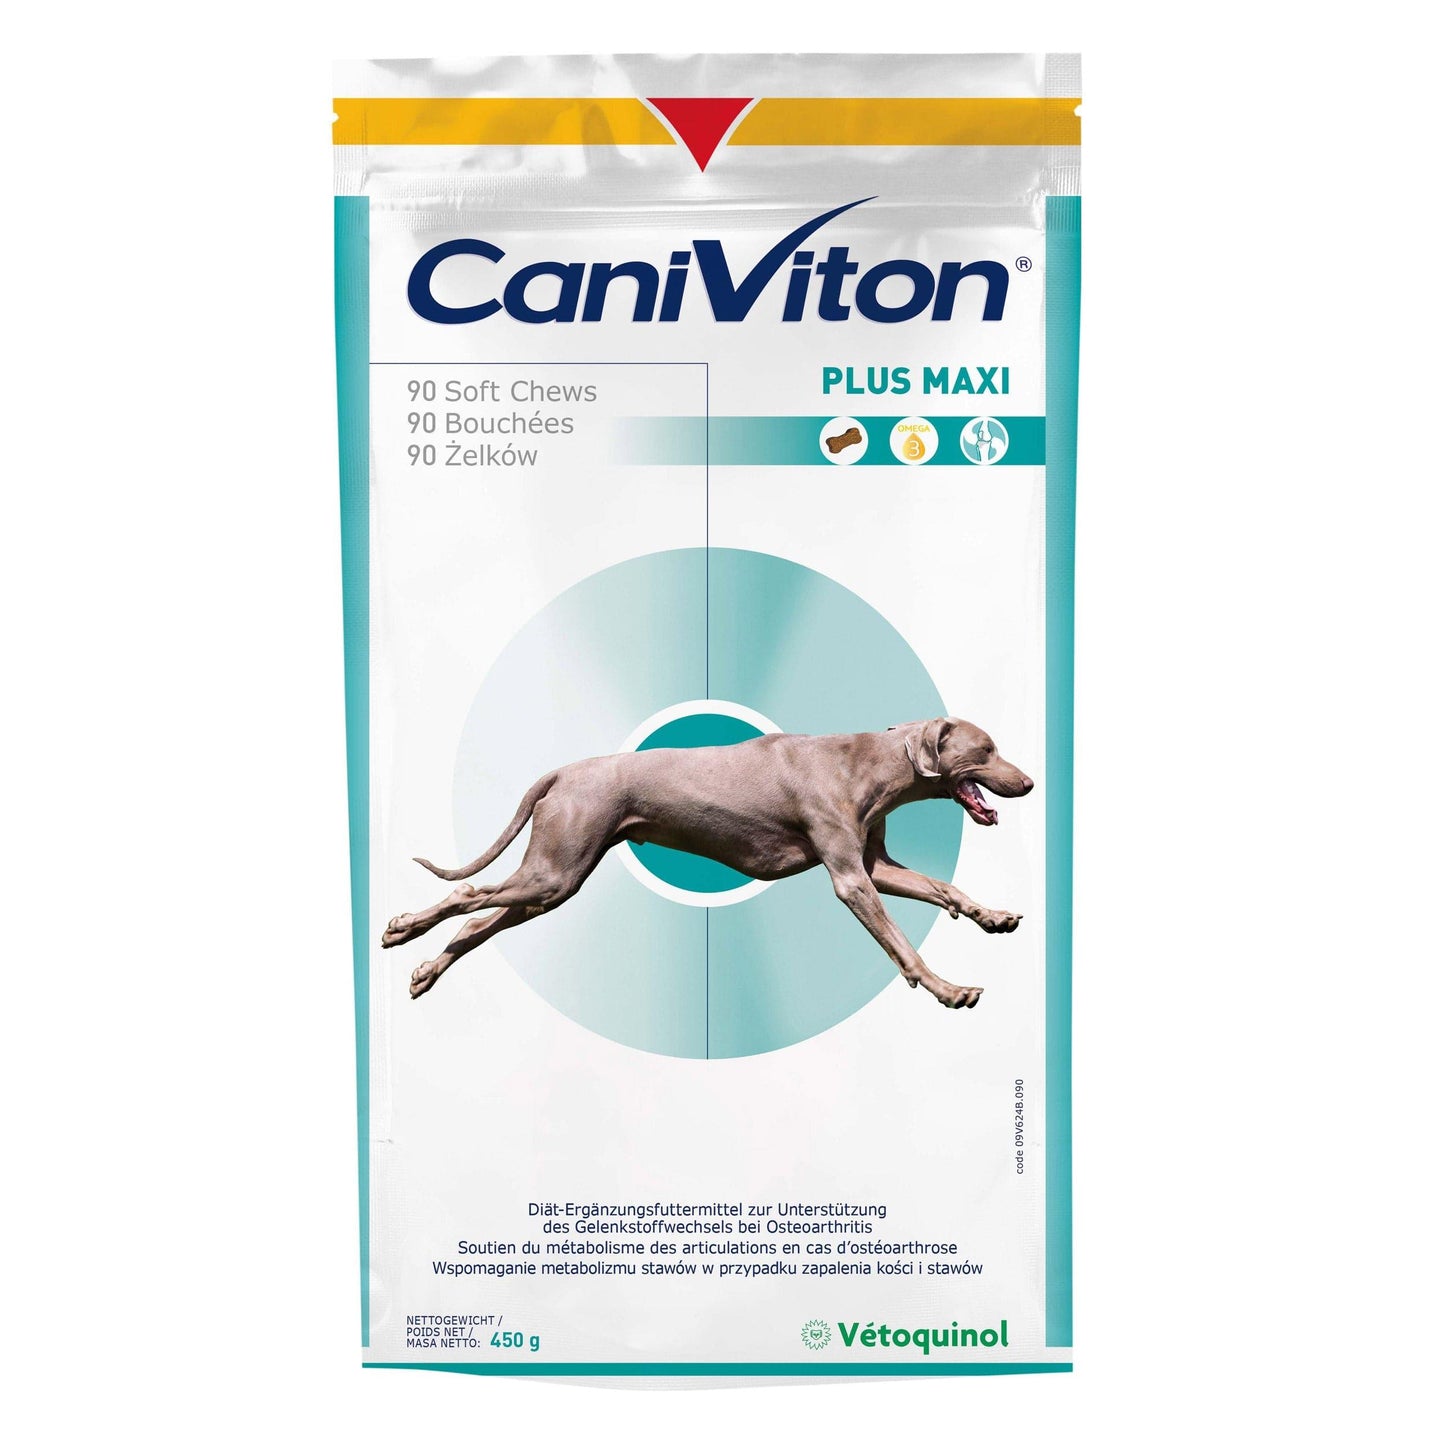 Caniviton Plus Maxi - Vétoquinol - Alter:Adult, Alter:Senior, Darreichungsform:Tabletten, Ergänzungsfuttermittel:Gelenke, Tierart:Hund - Marigin AG Onlineshop für Tierbedarf